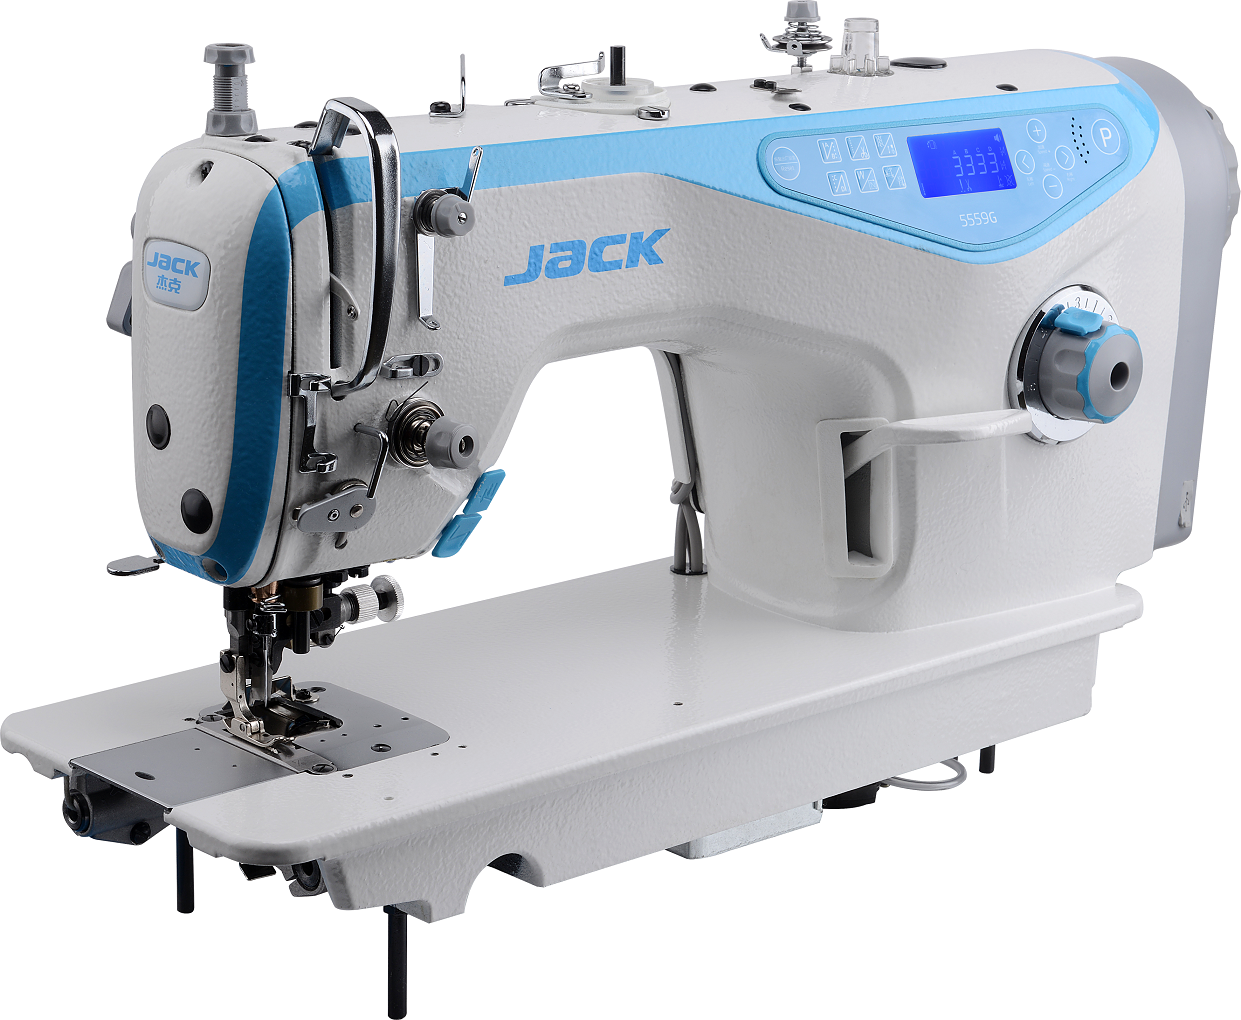 Промышленная швейная машина JACK JK-5559G-W автоматическая одноигольная стачивающая с обрезкой края